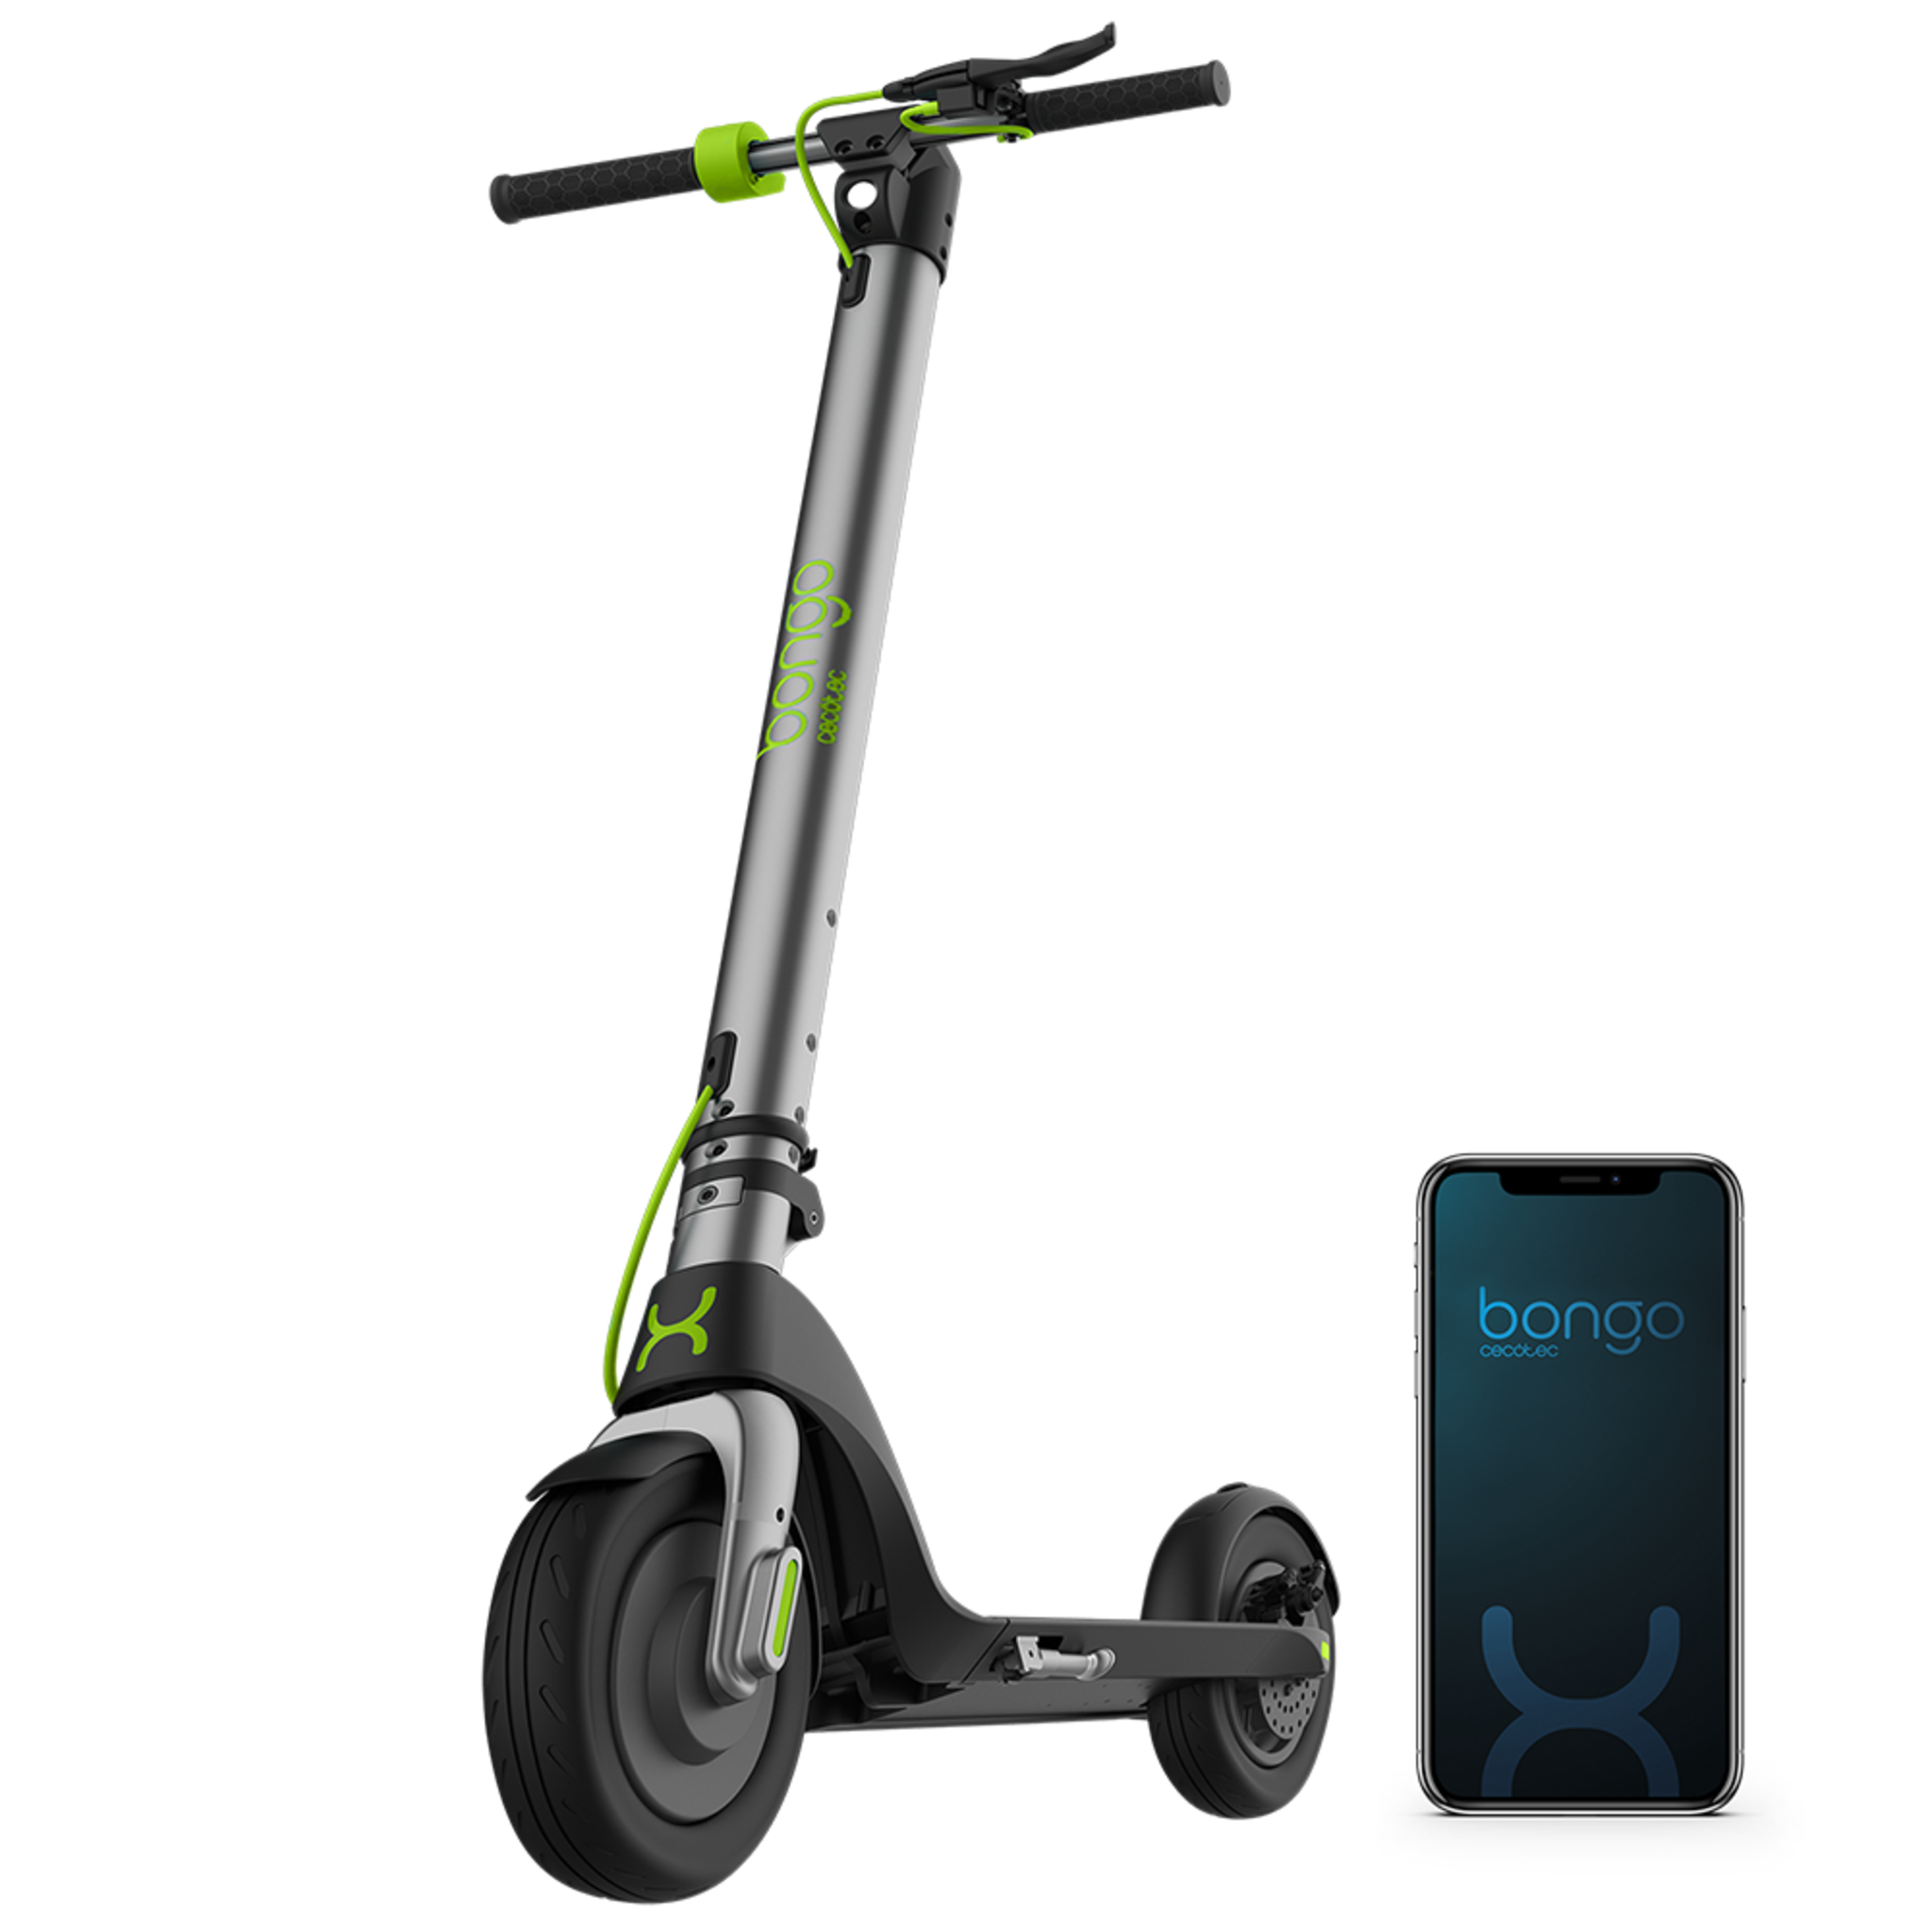 Trottinette électrique Bongo Série A Connected. Puissance maximale de 700 W, App pour smartphones, batterie interchangeable, autonomie illimitée de 25 km et roues anti-crevaison de 8,5”.